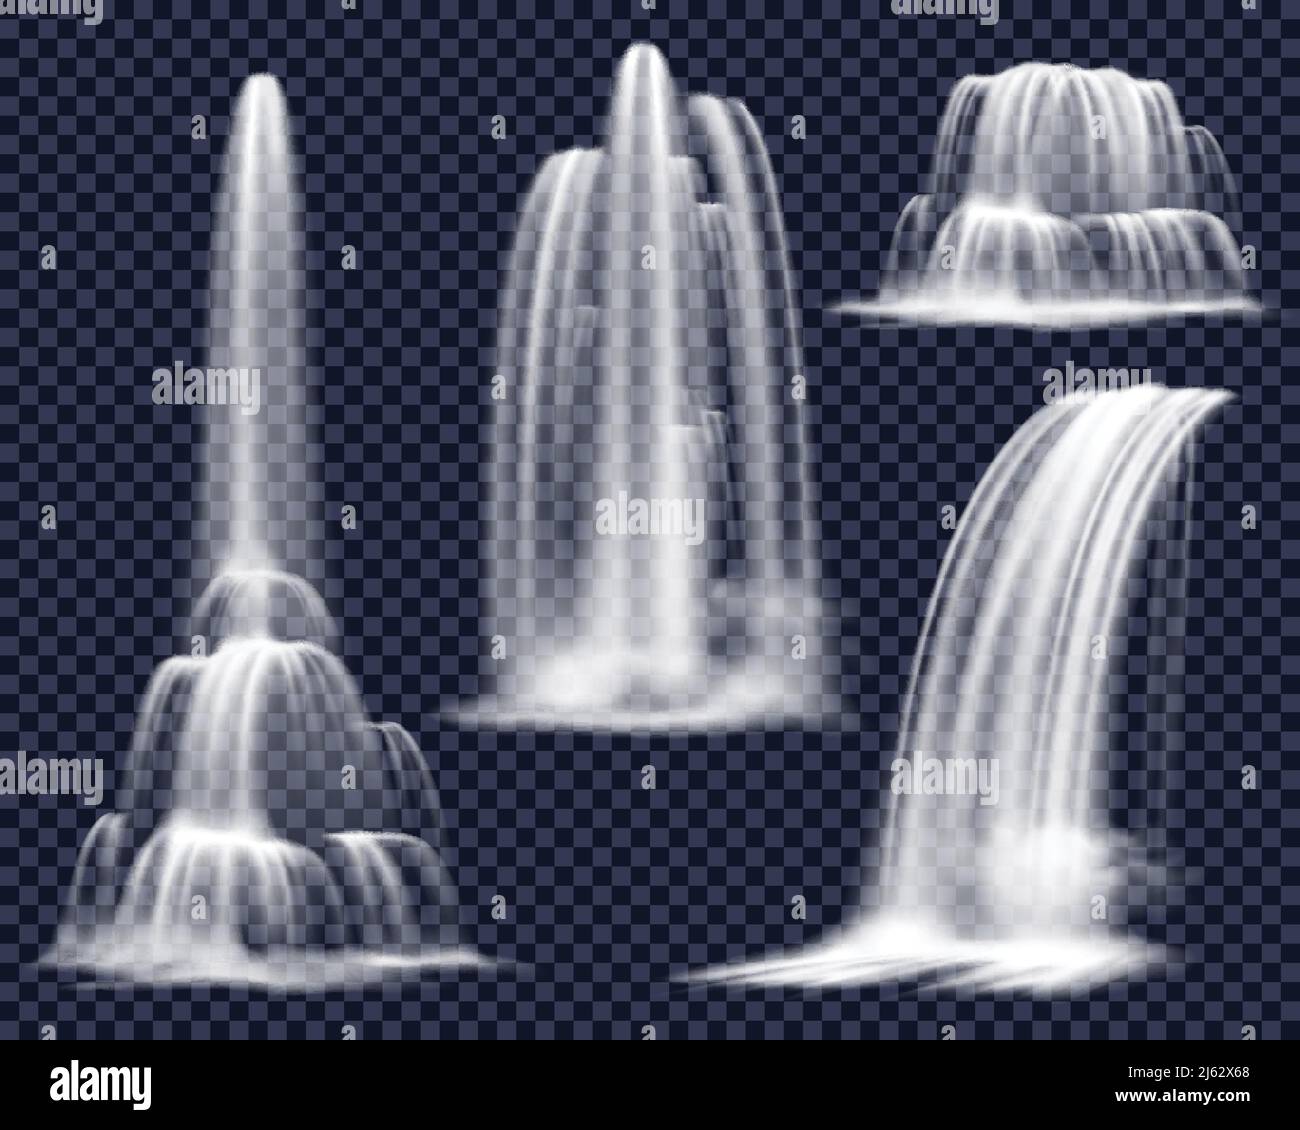 Conjunto de cascadas realistas incluyendo arroyos en cascada de varias formas sobre fondo transparente ilustración vectorial aislada Ilustración del Vector